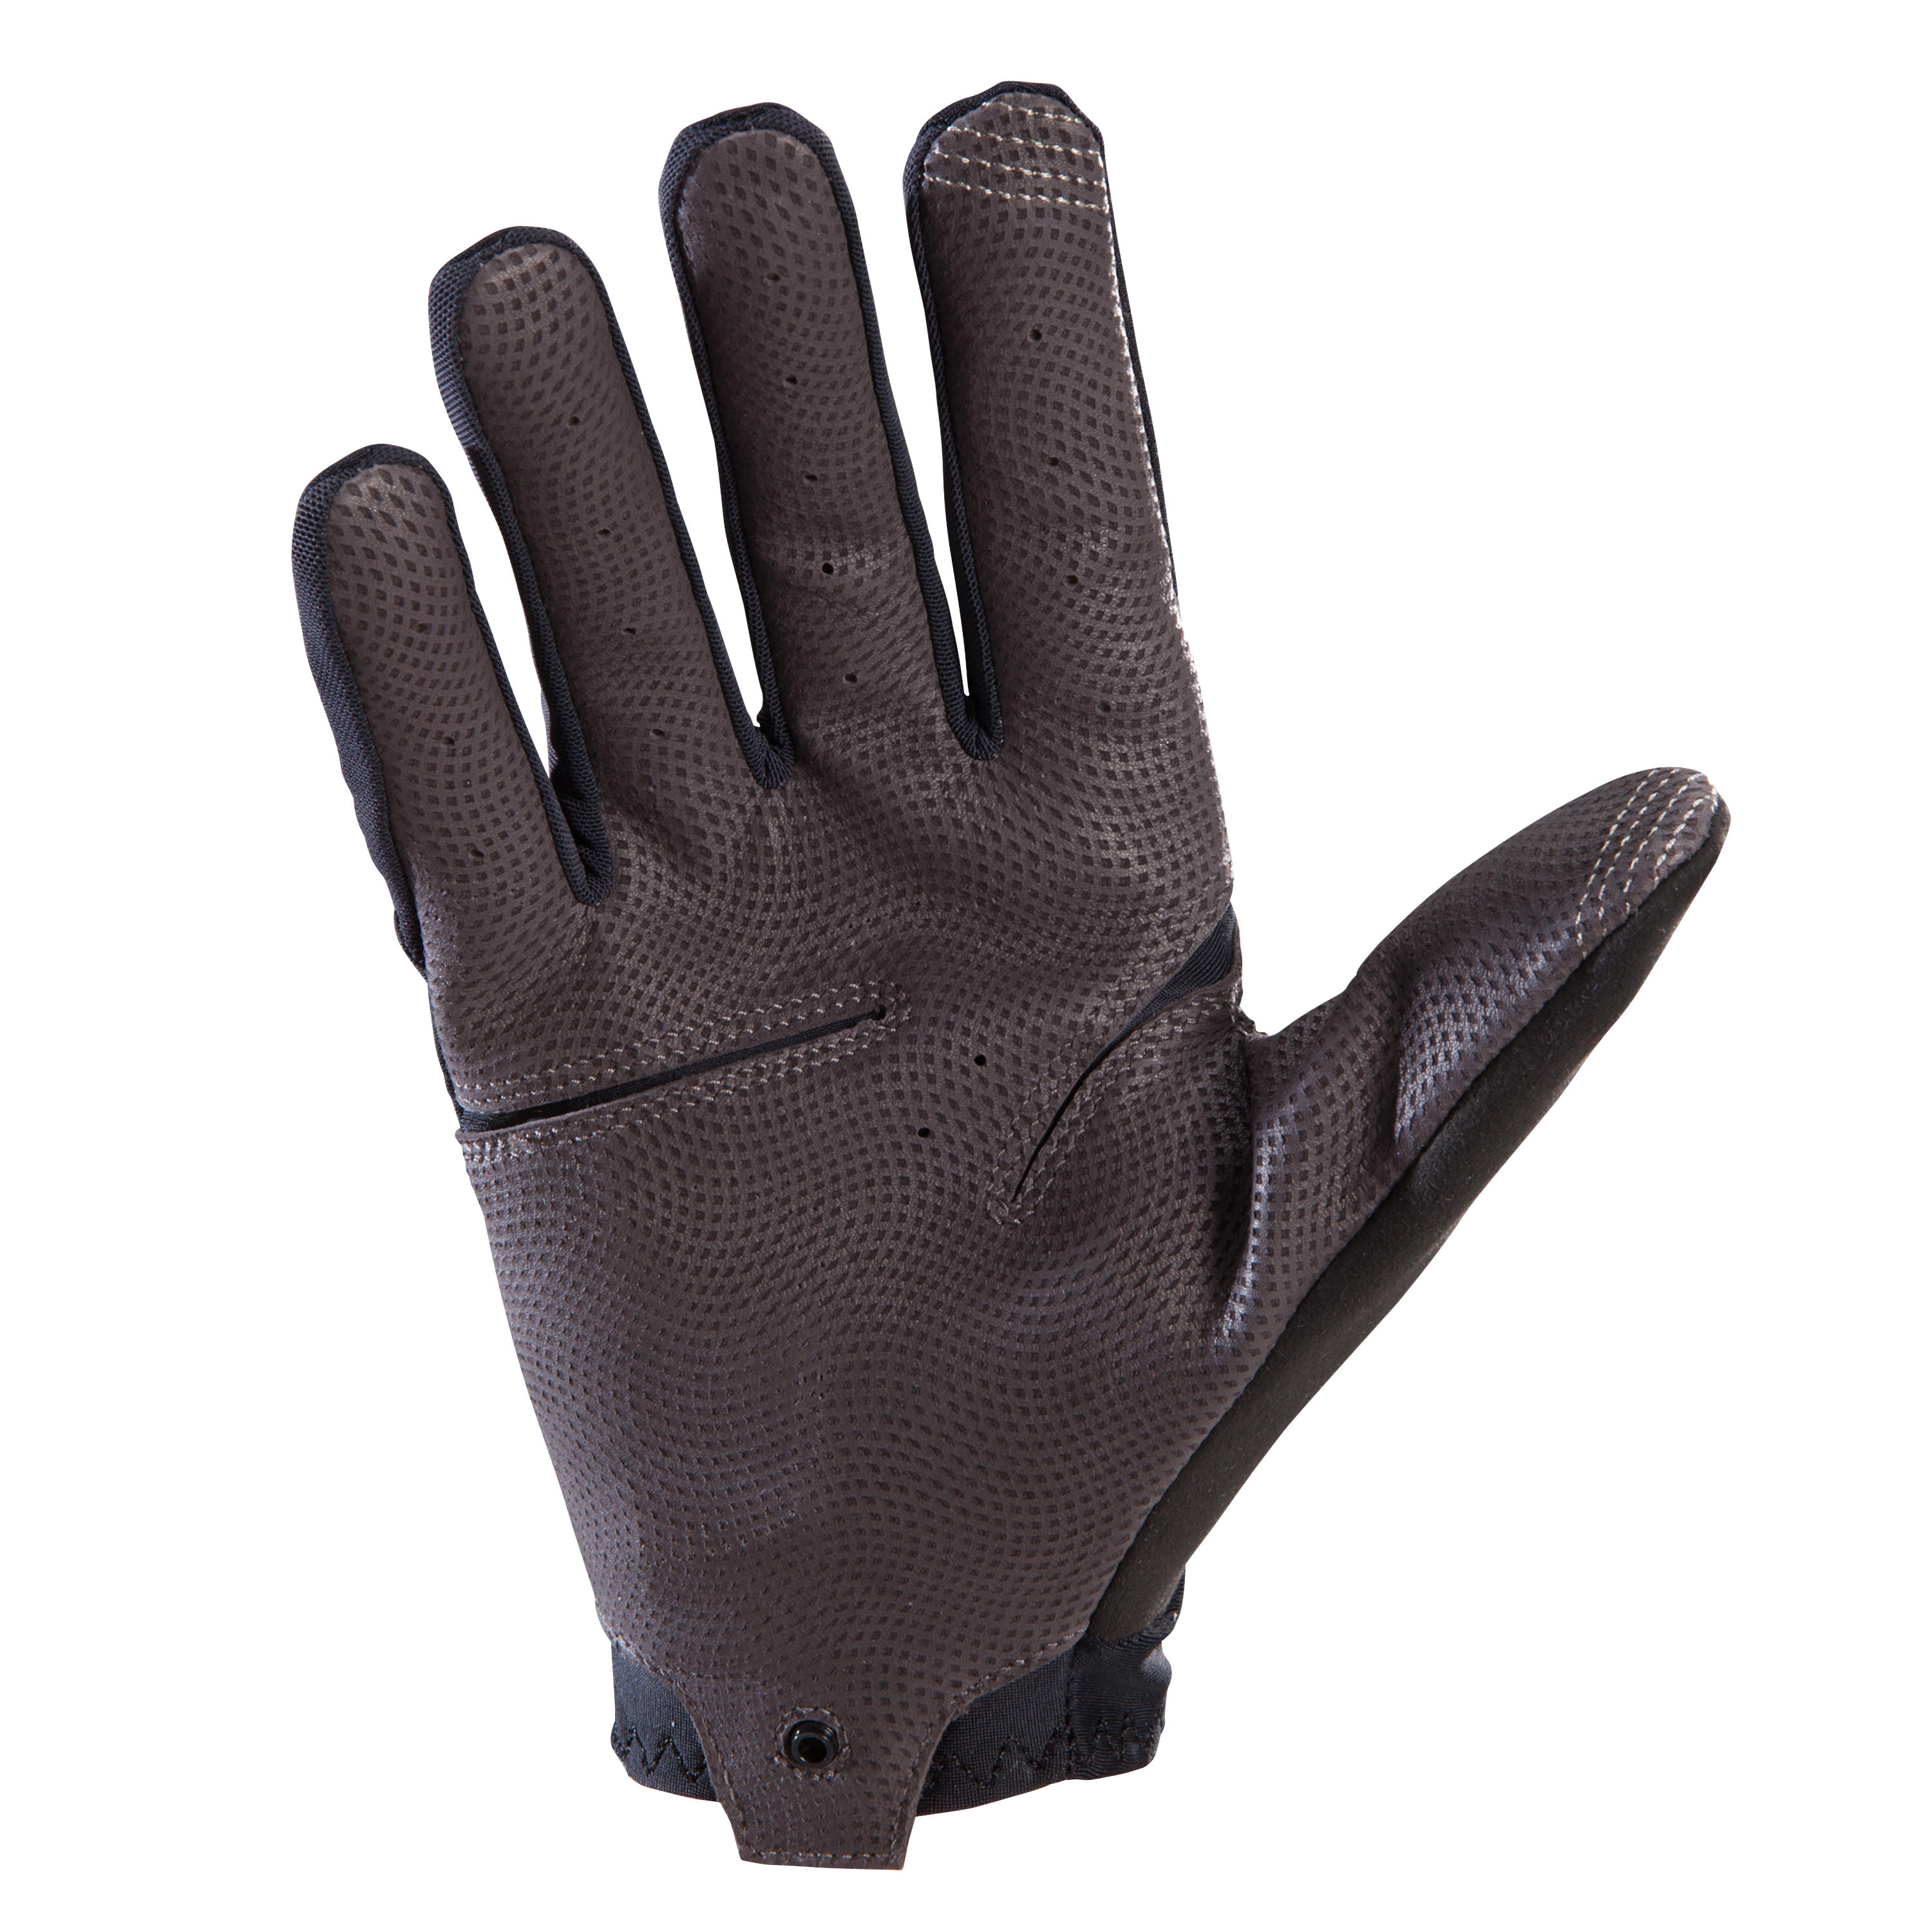 Light XC Mountain Bike Gloves - Black 3/4